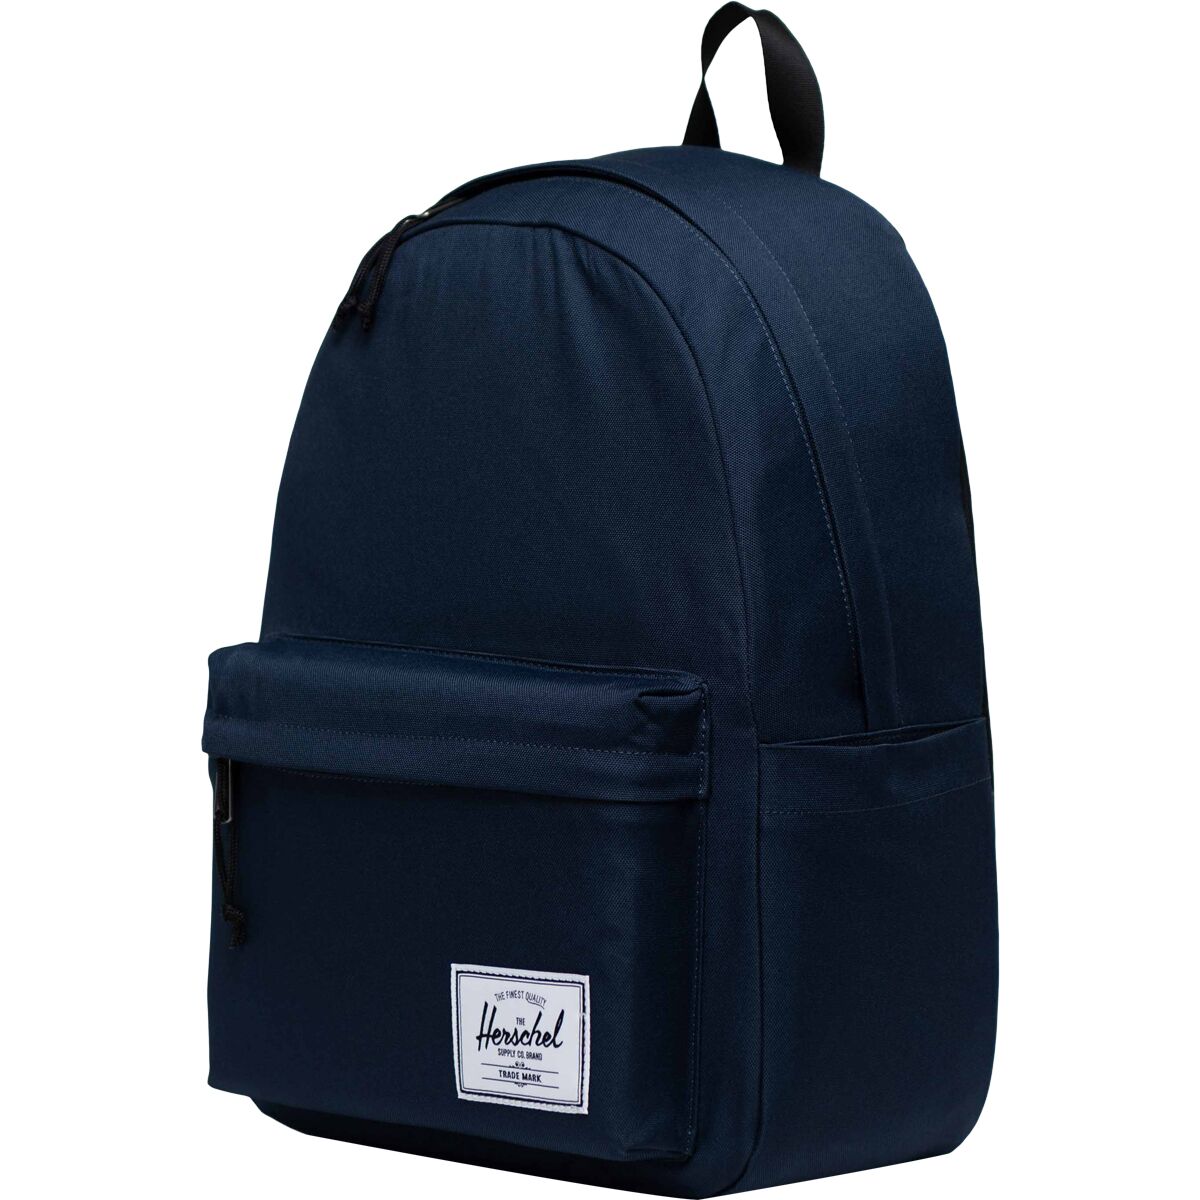 Классический рюкзак xl 26 л Herschel Supply, синий рюкзак herschel classic xl 10492 grey black 30 l